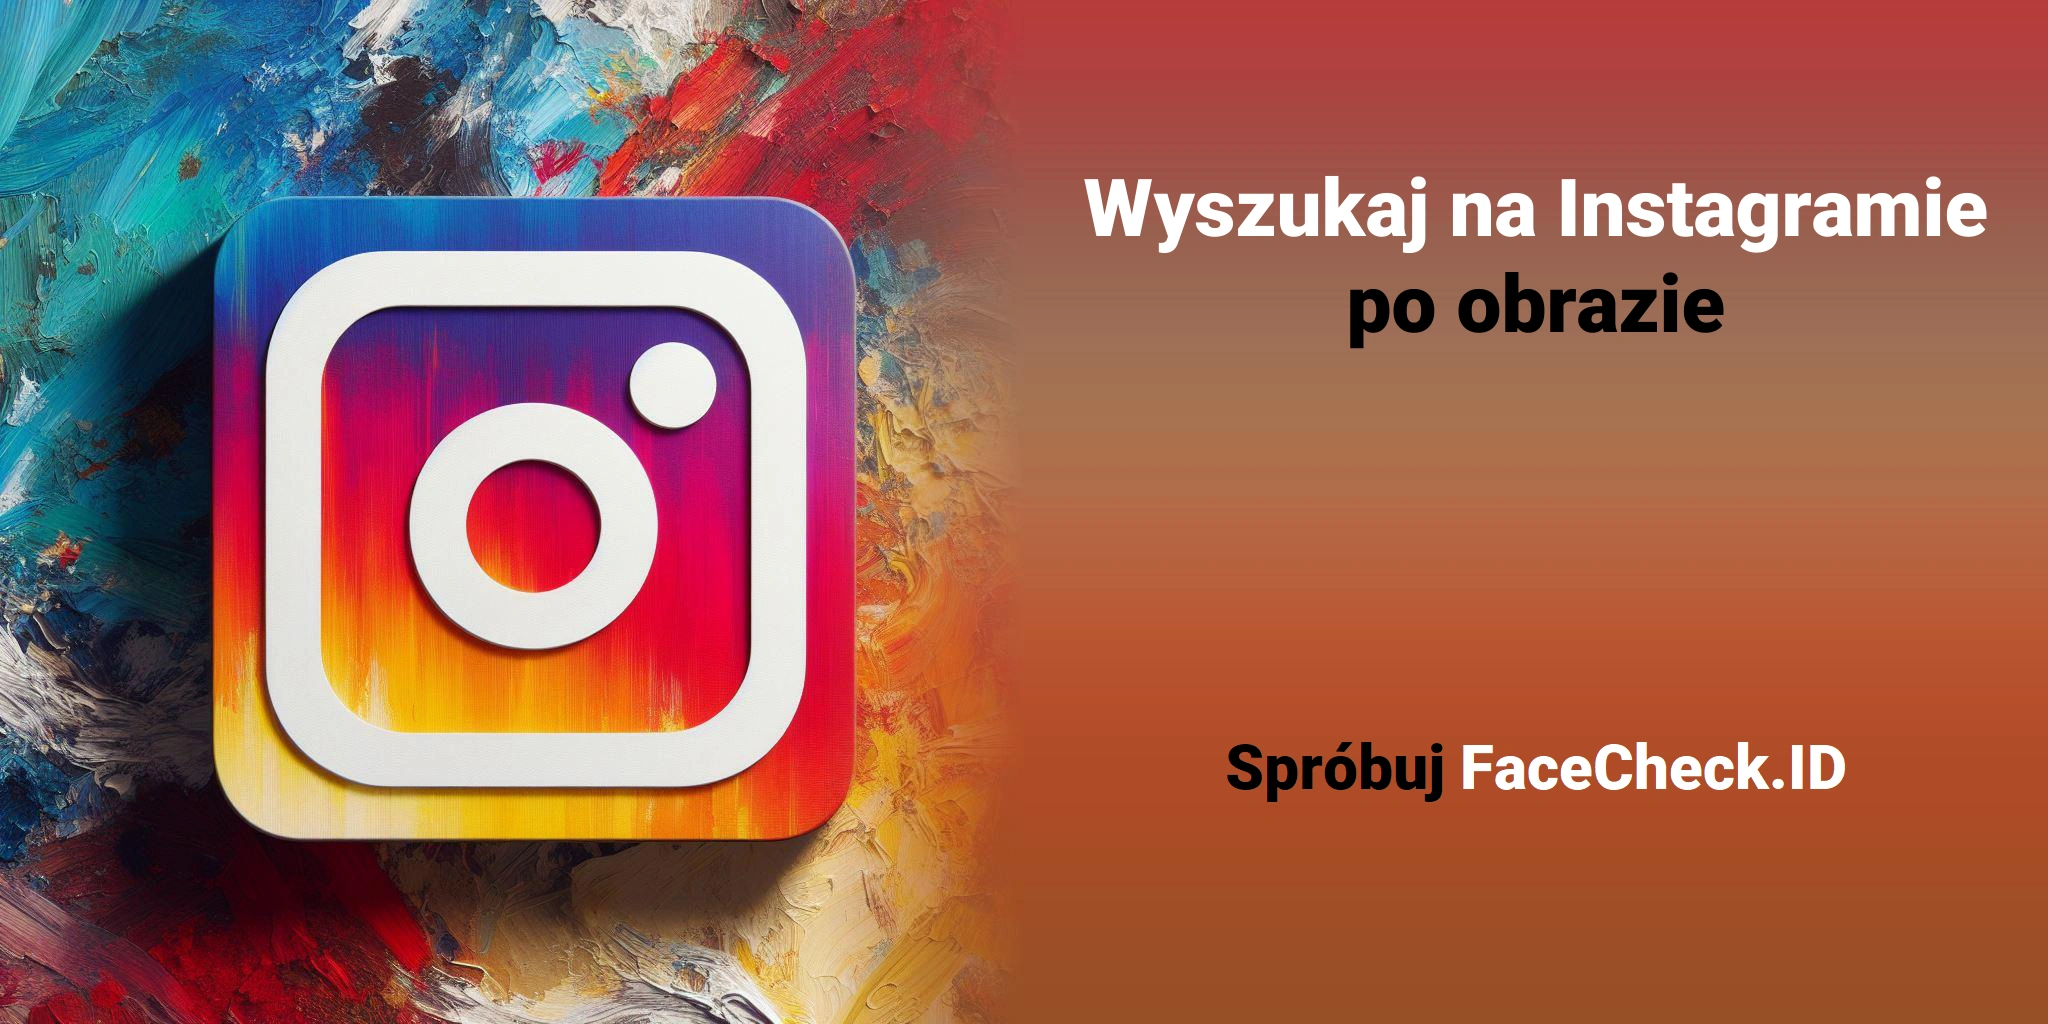 Wyszukaj na Instagramie po obrazie Spróbuj FaceCheck.ID